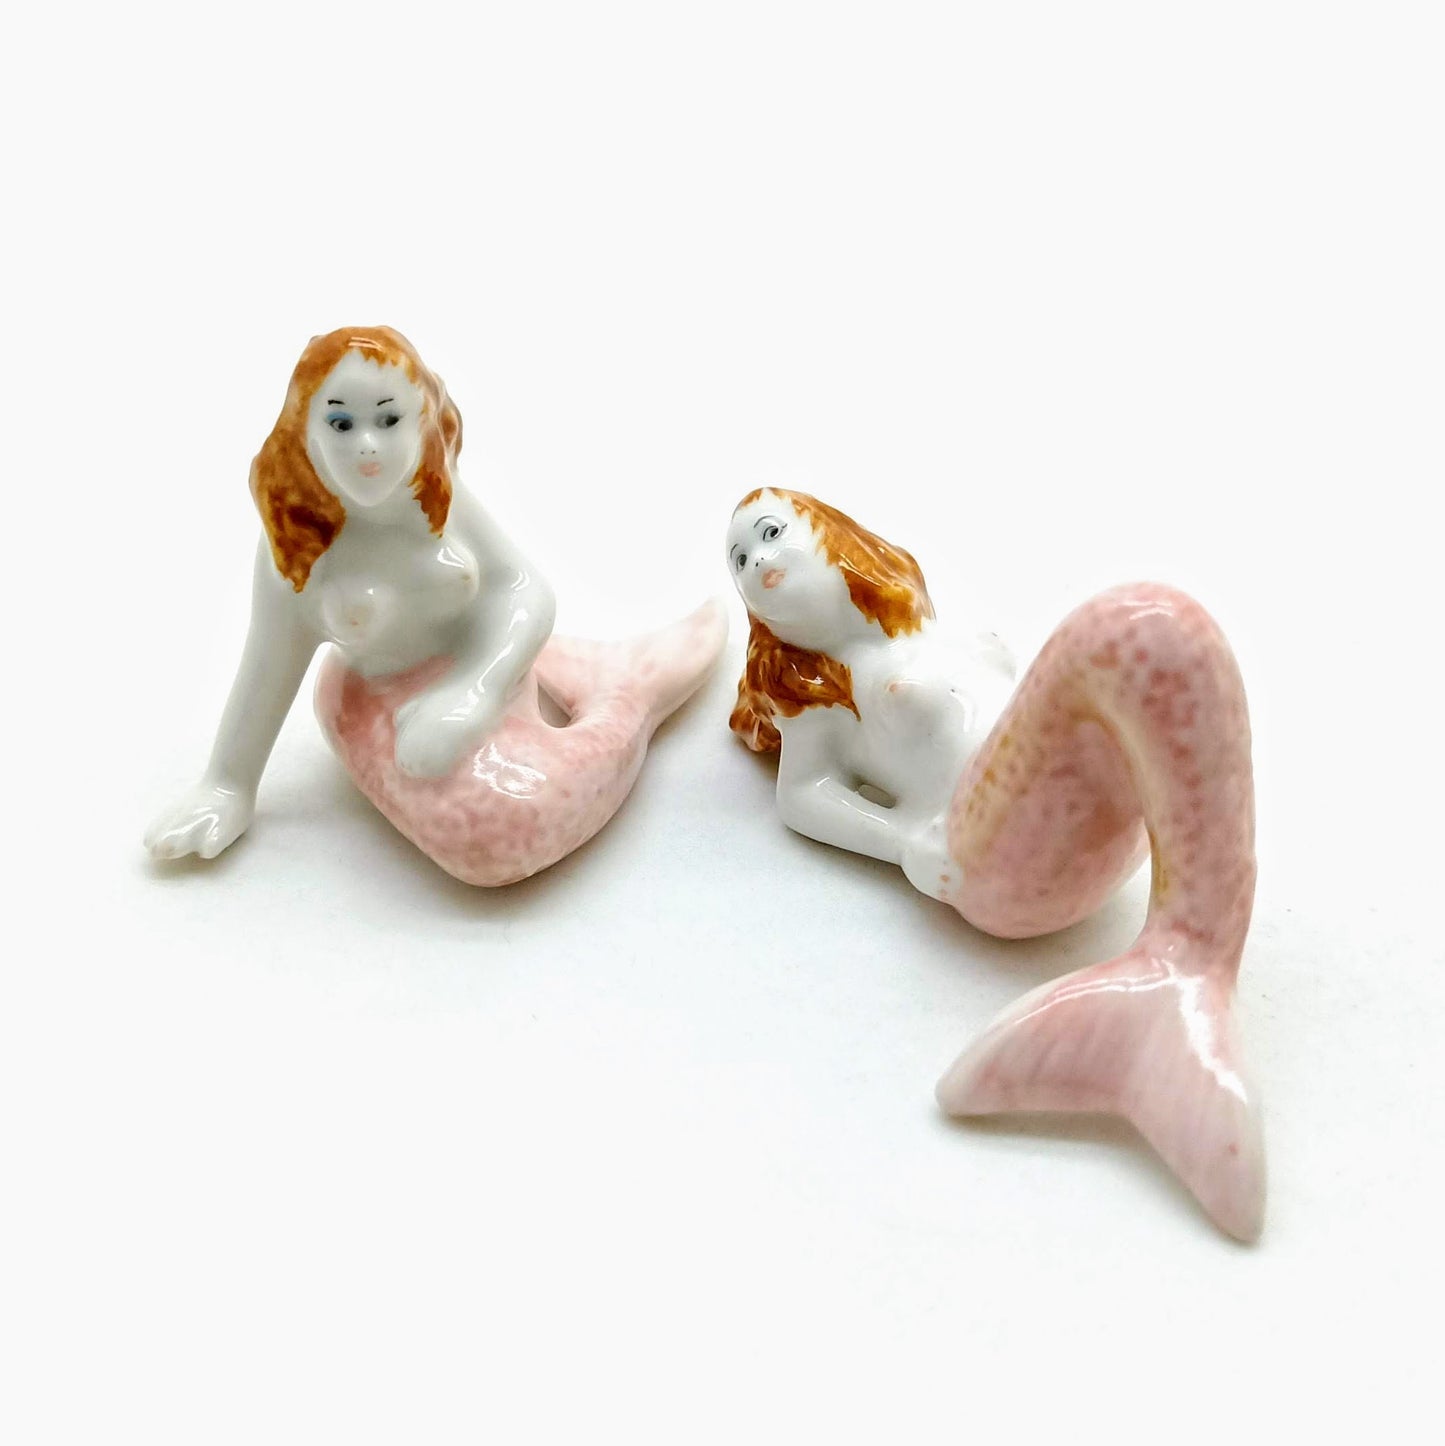 2 Mermaid Figurines